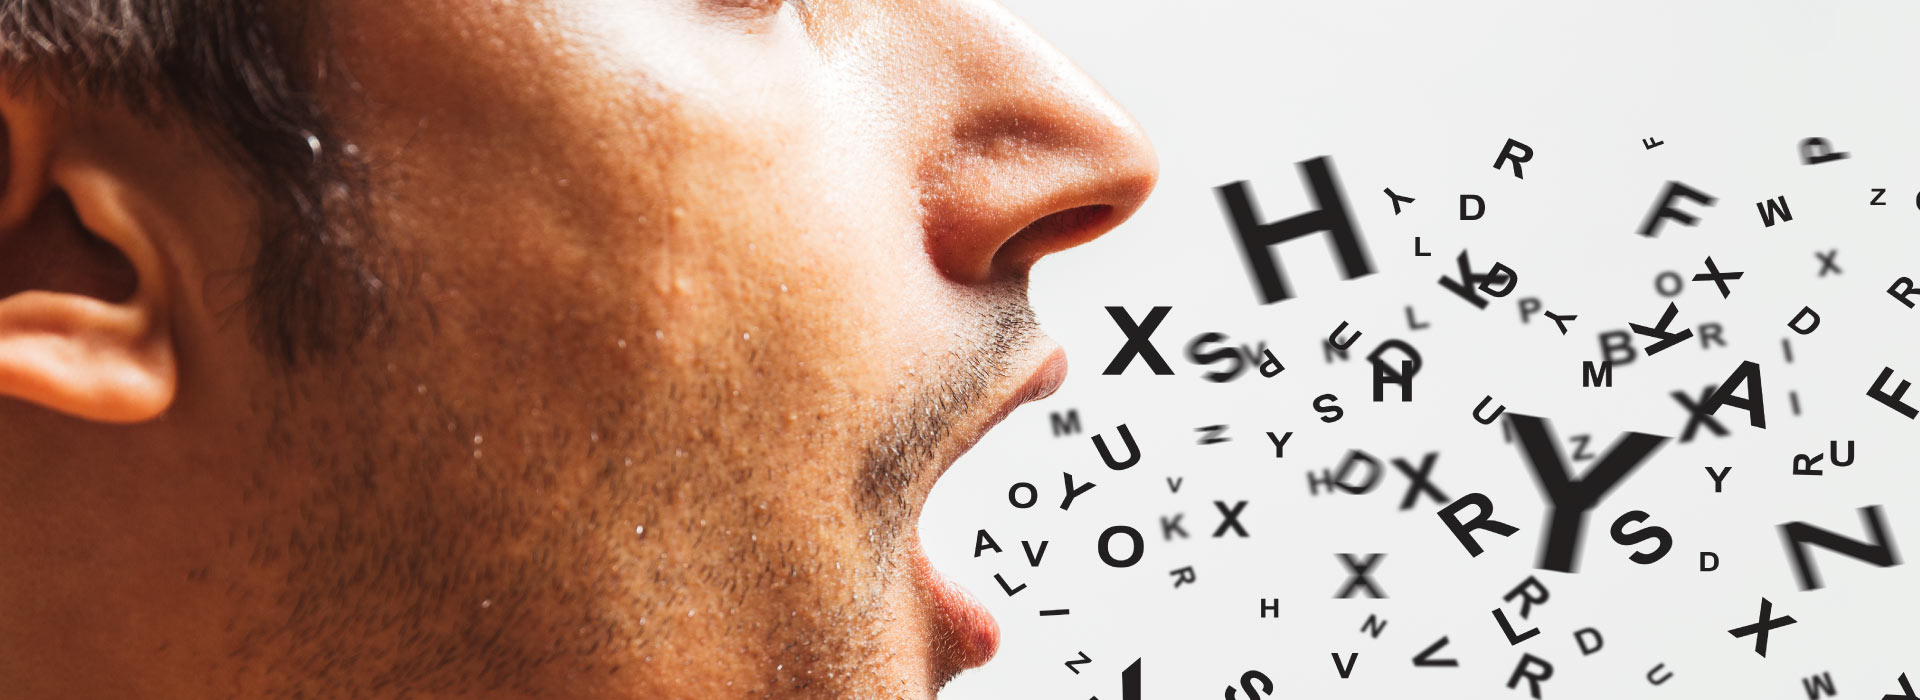 Imagem de uma pessoa com boca aberta e letras saindo de dentro da boca